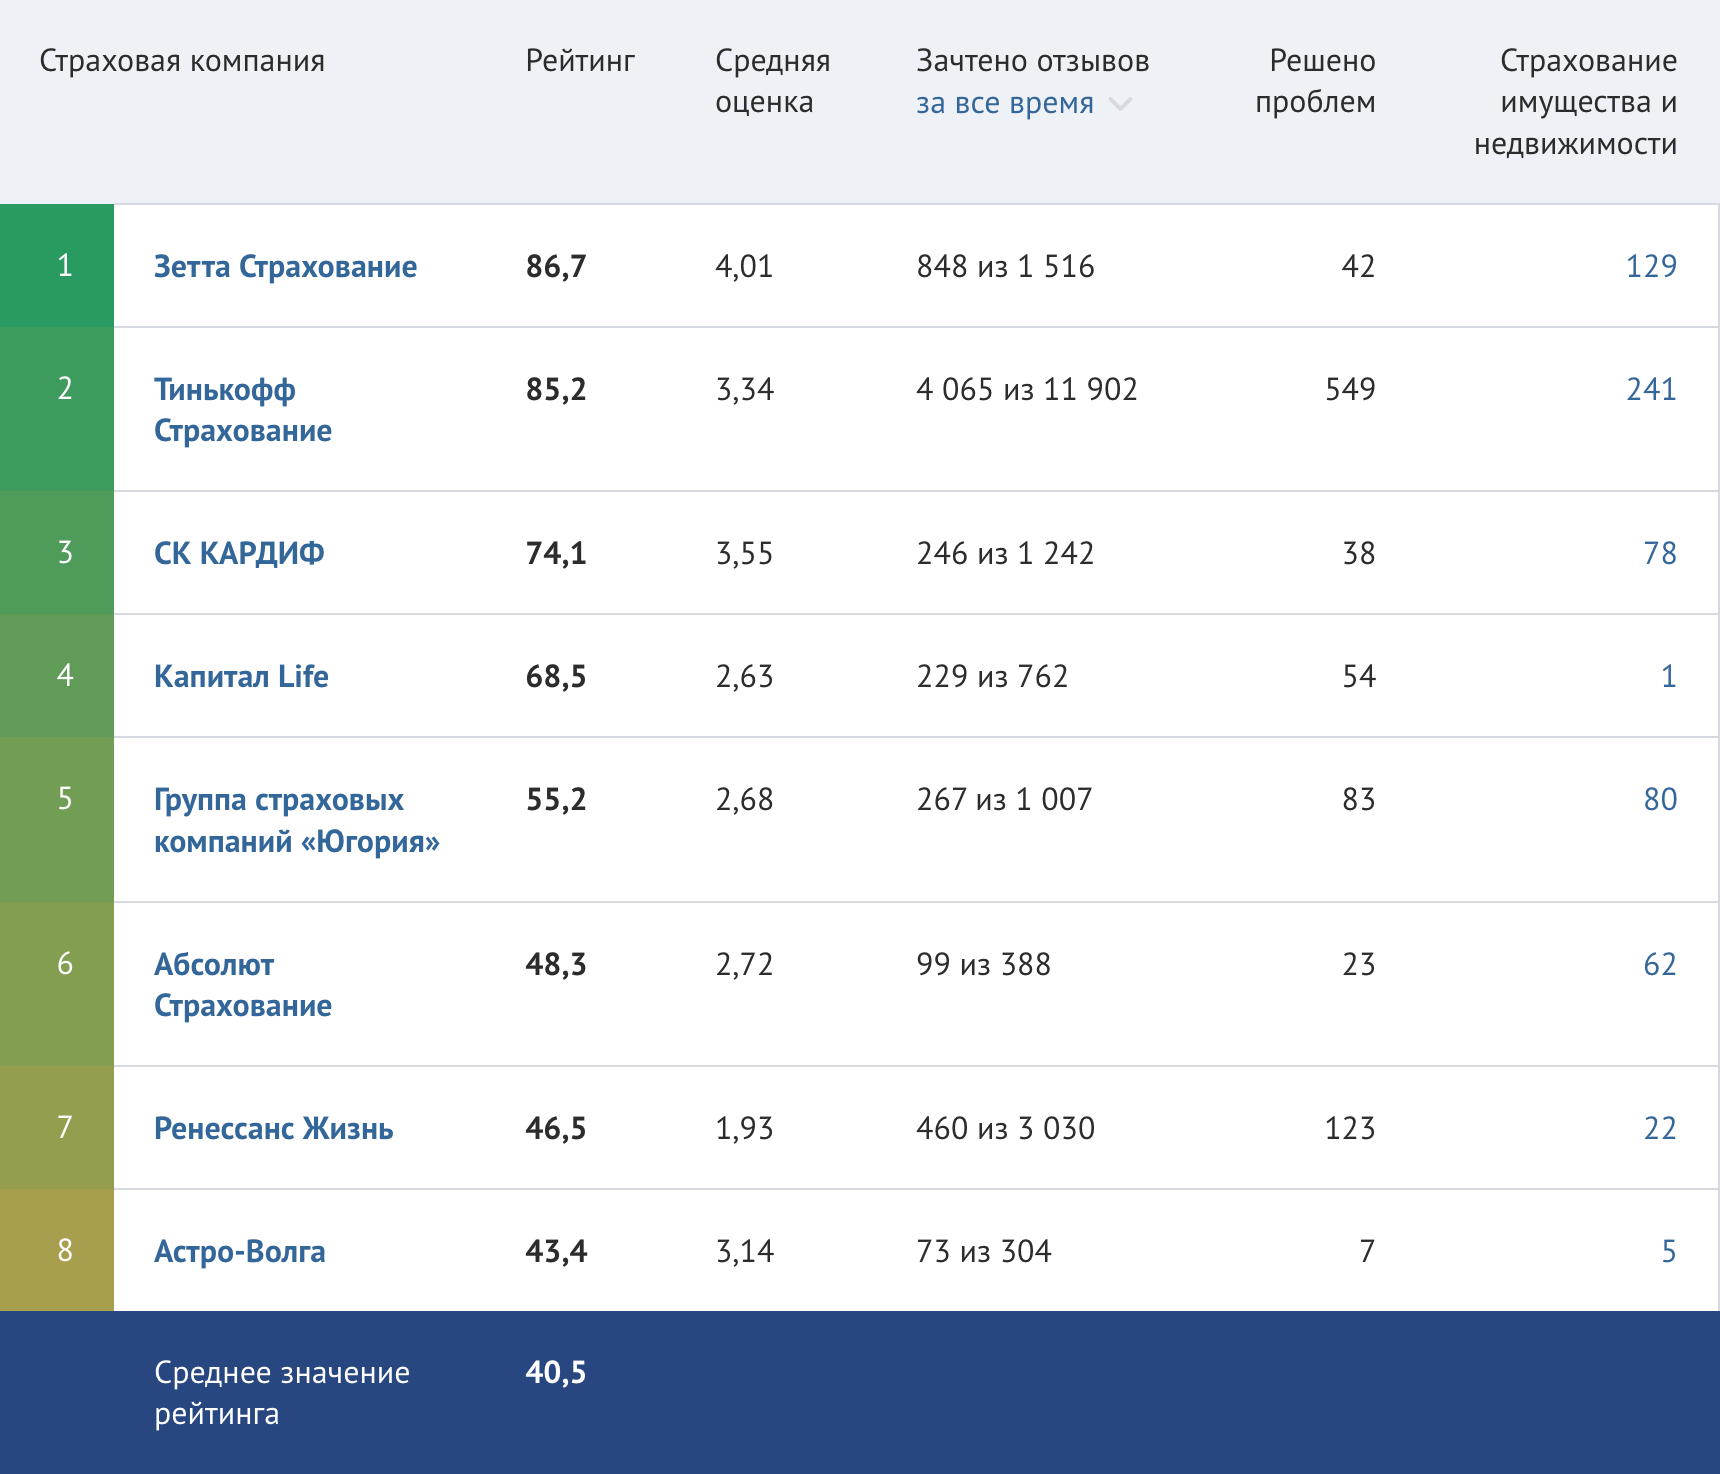 Рейтинг страховых компаний в сфере страхования имущества и недвижимости. Источник: banki.ru